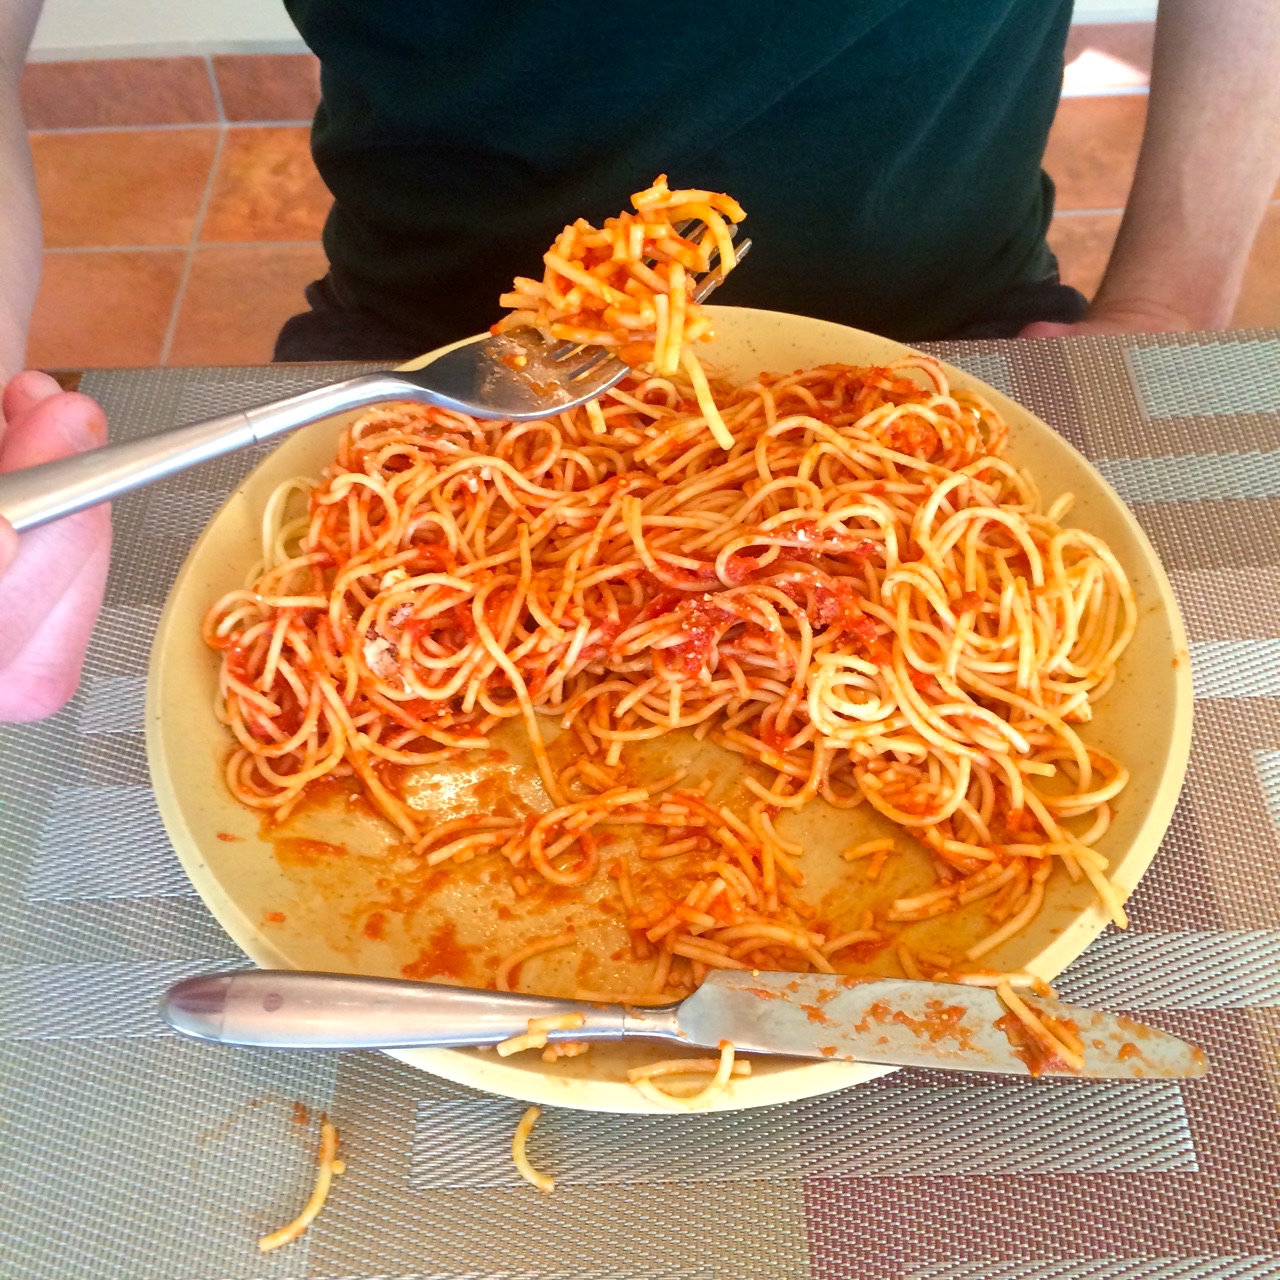 Cutting your spaghetti